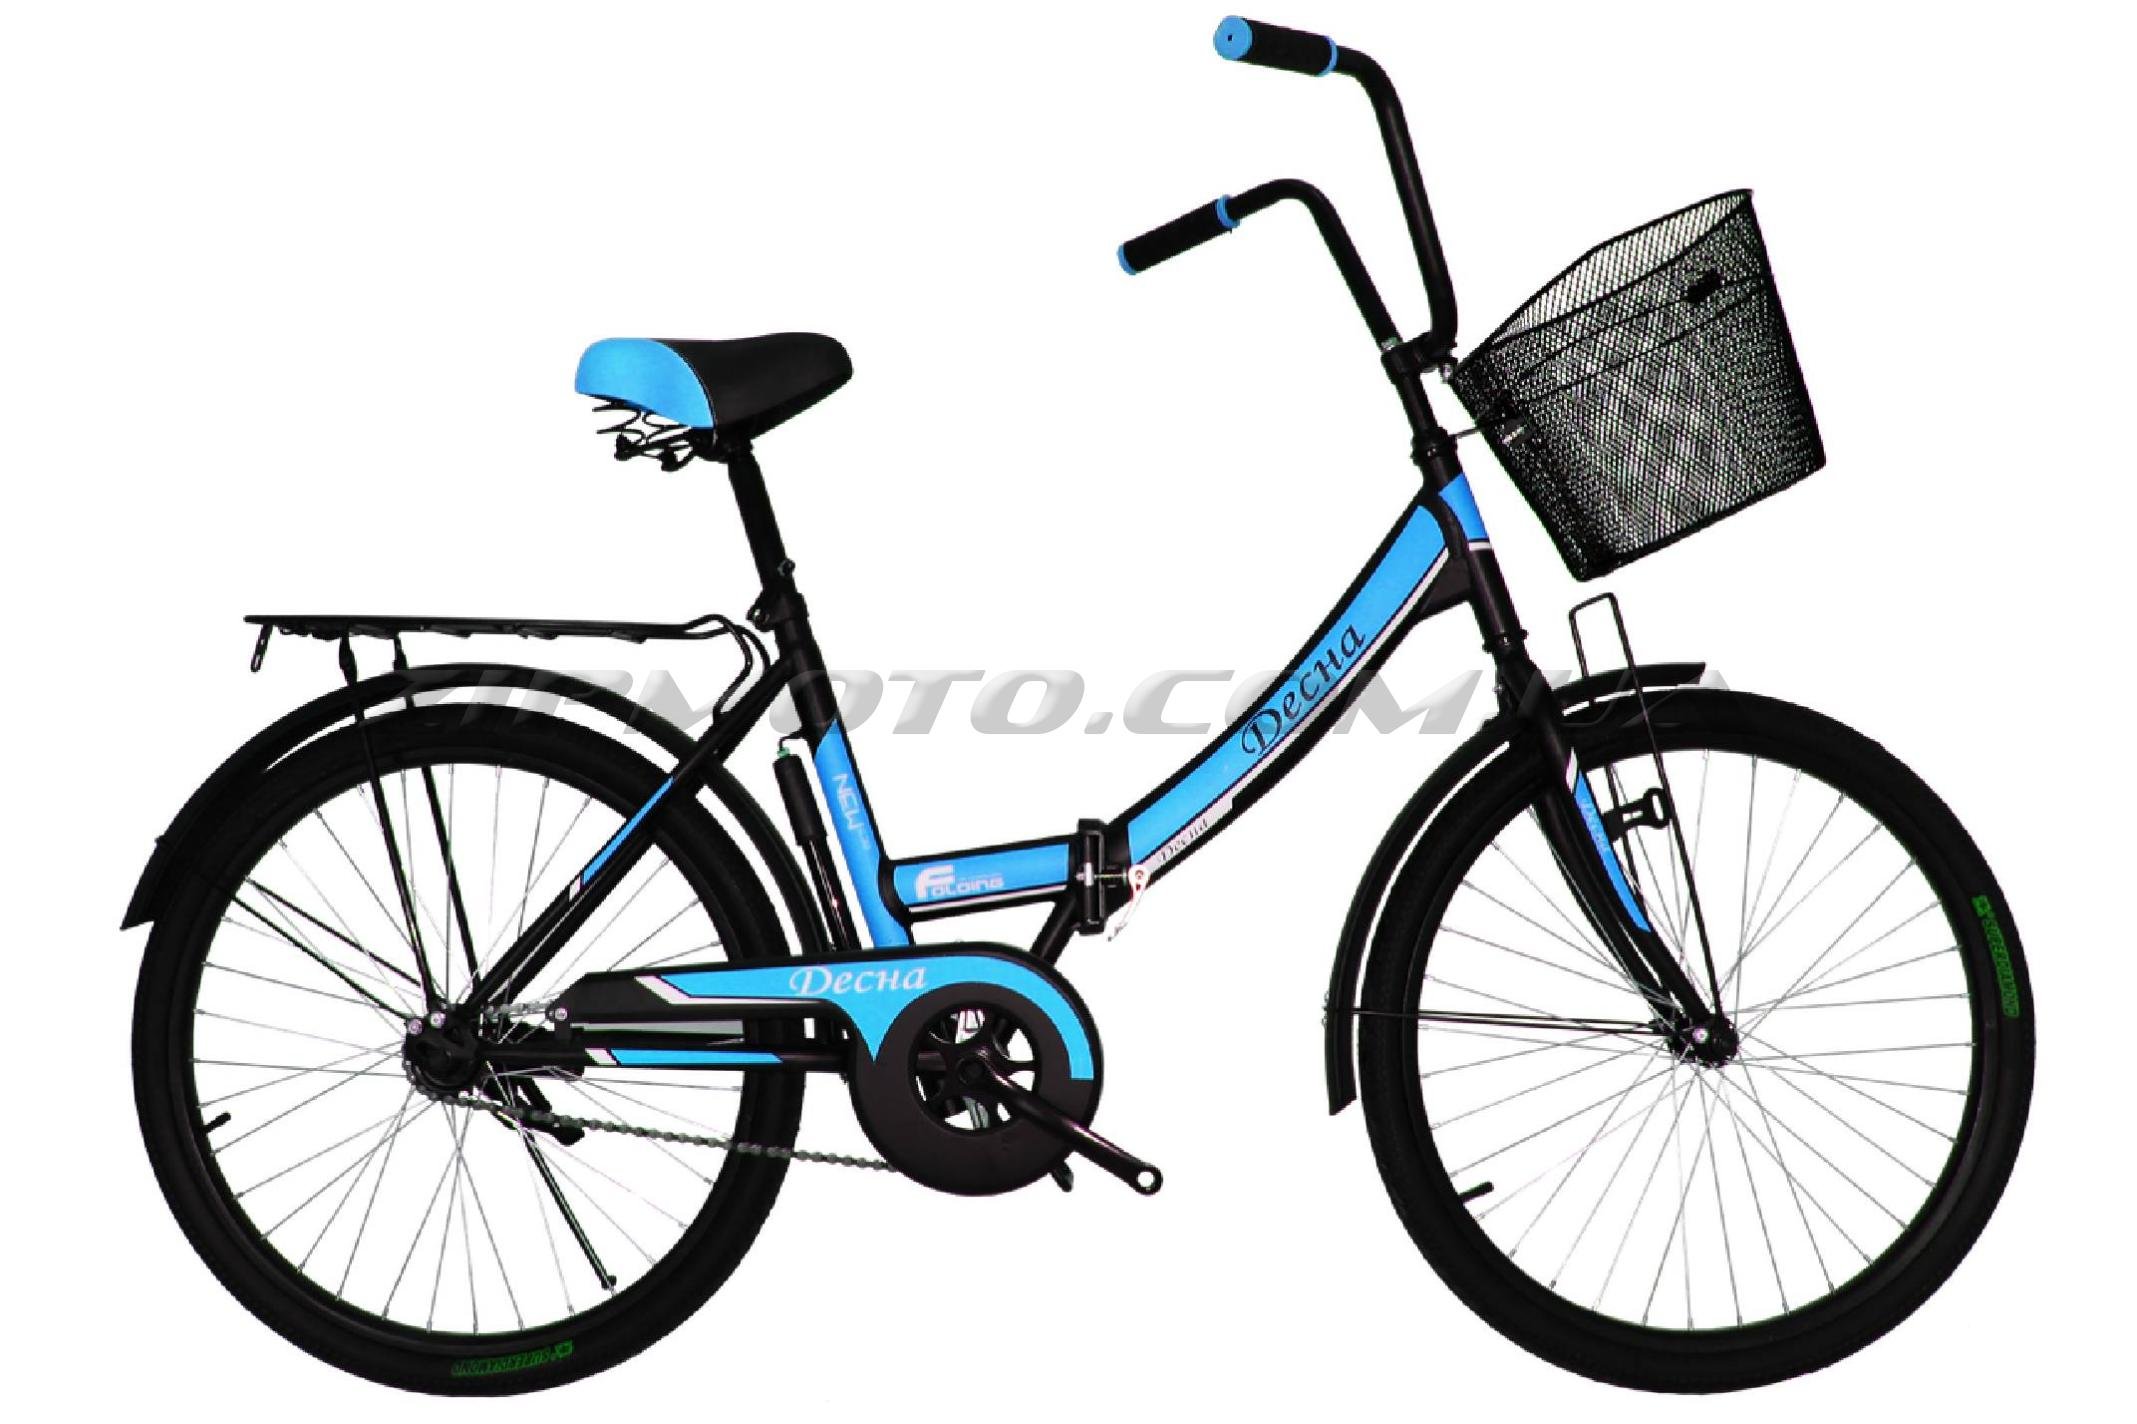 Десна 24. Велосипед Десна складной 24. Велосипед Титан черный синий. Озон велосипед складной Десна 24. Складной детский велосипед Титан.